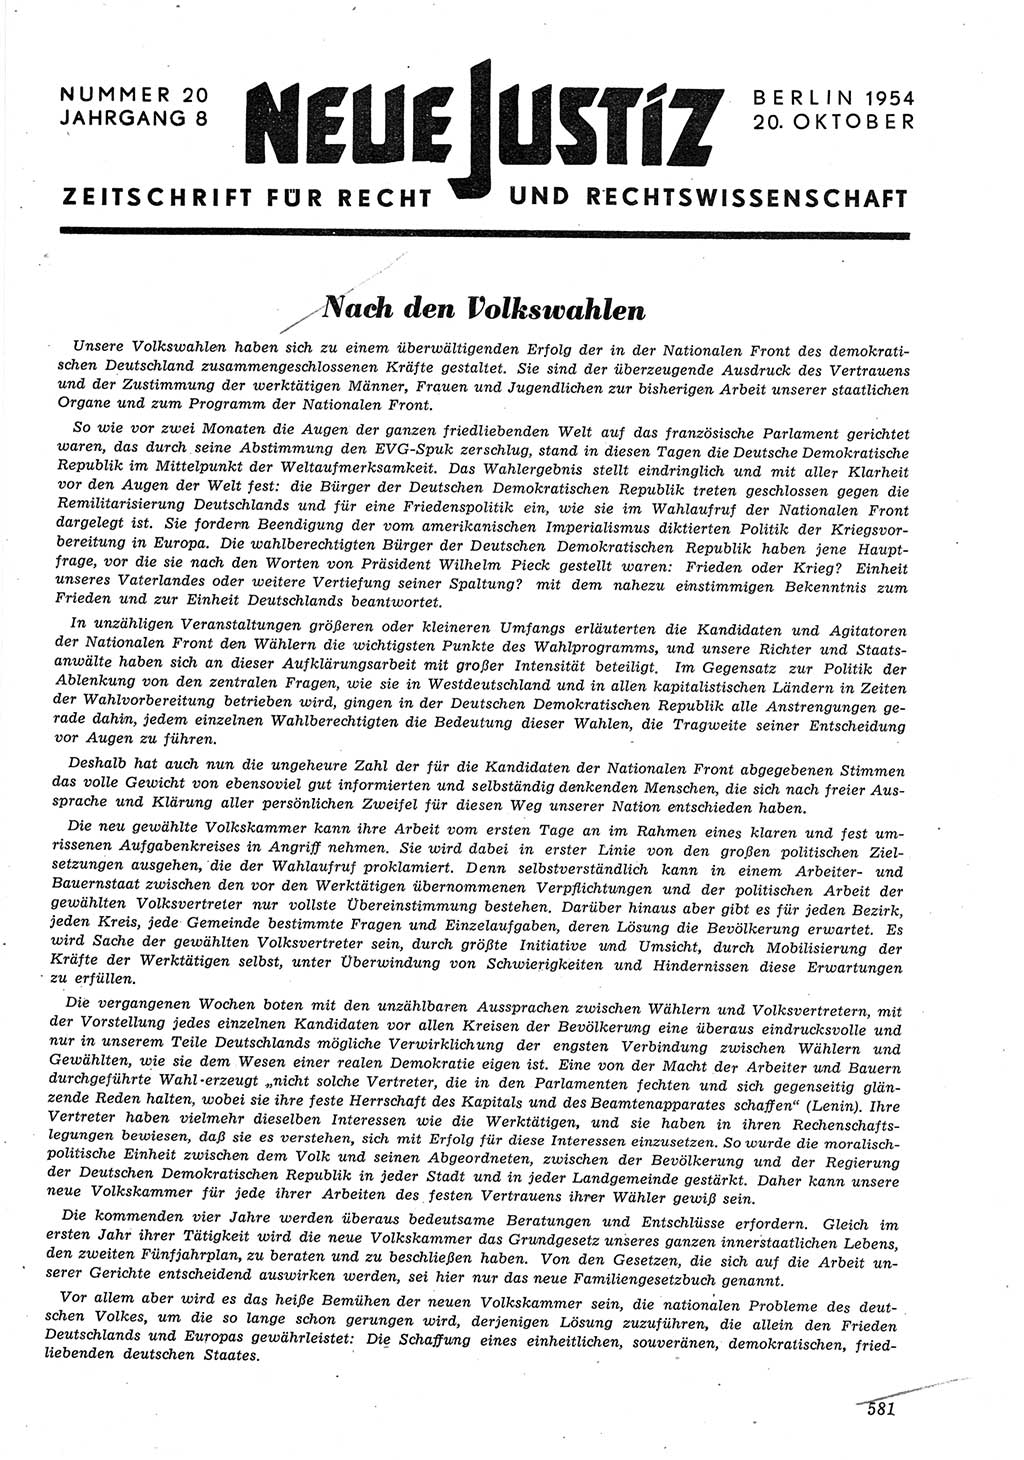 Neue Justiz (NJ), Zeitschrift für Recht und Rechtswissenschaft [Deutsche Demokratische Republik (DDR)], 8. Jahrgang 1954, Seite 581 (NJ DDR 1954, S. 581)